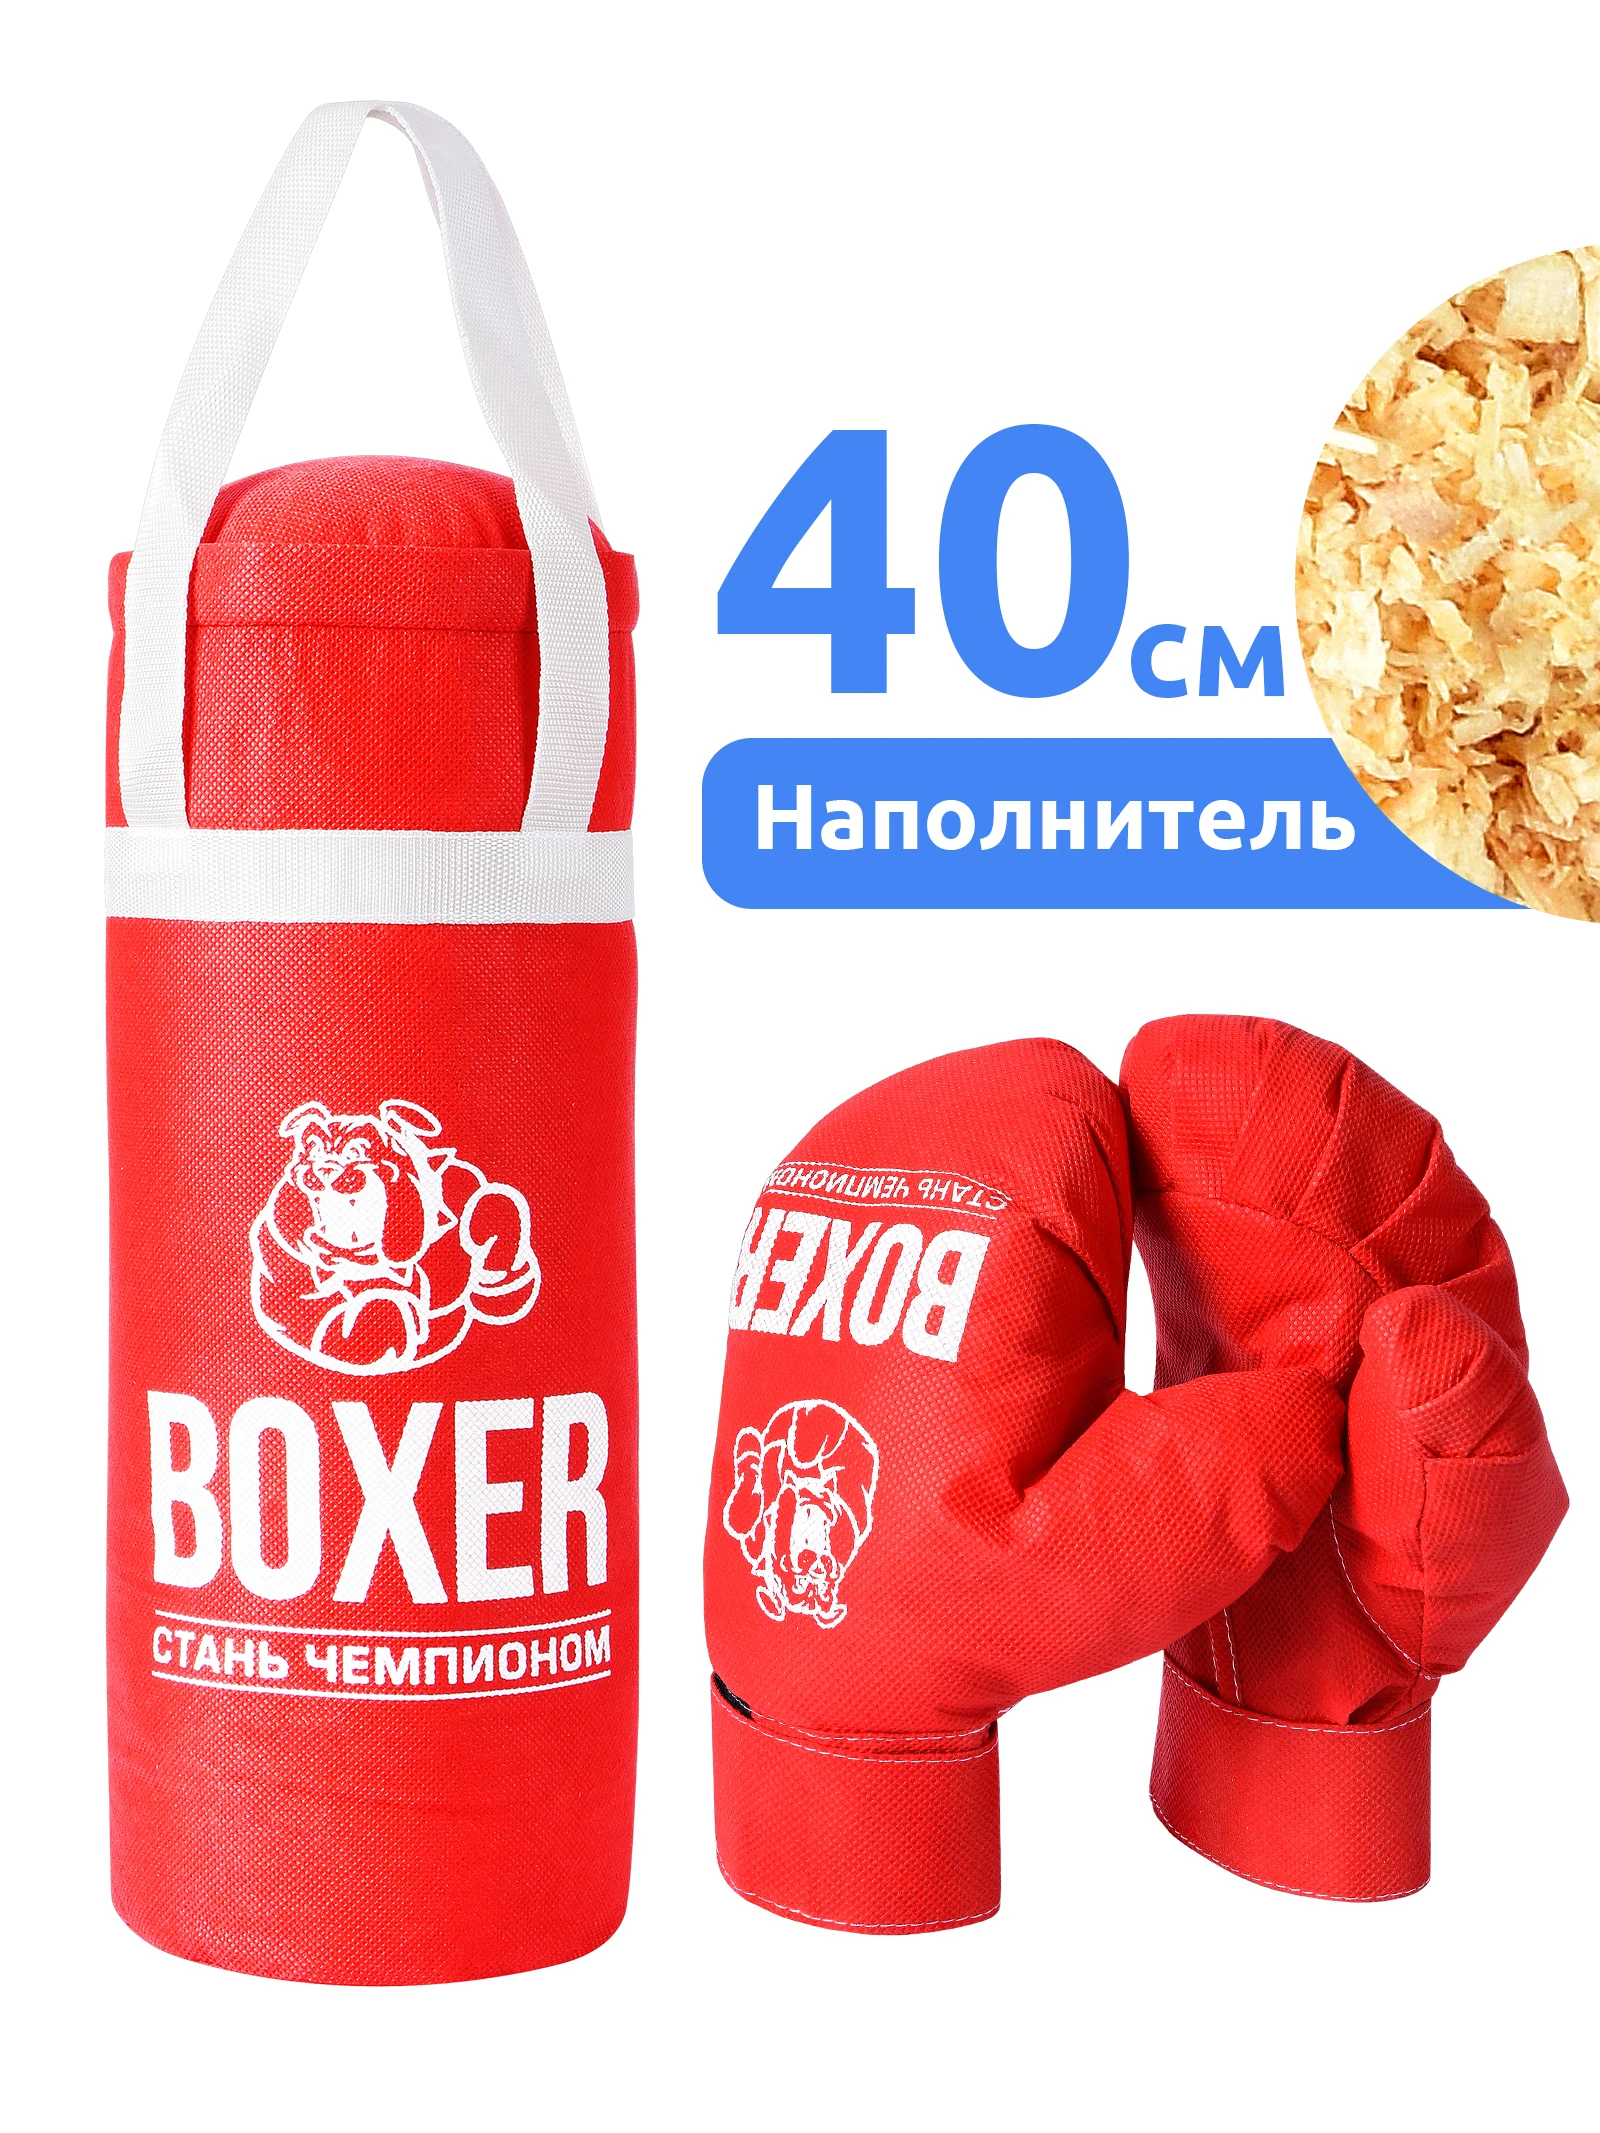 Набор для бокса детский (боксерская груша 40 см боксерские перчатки) | Спорт и